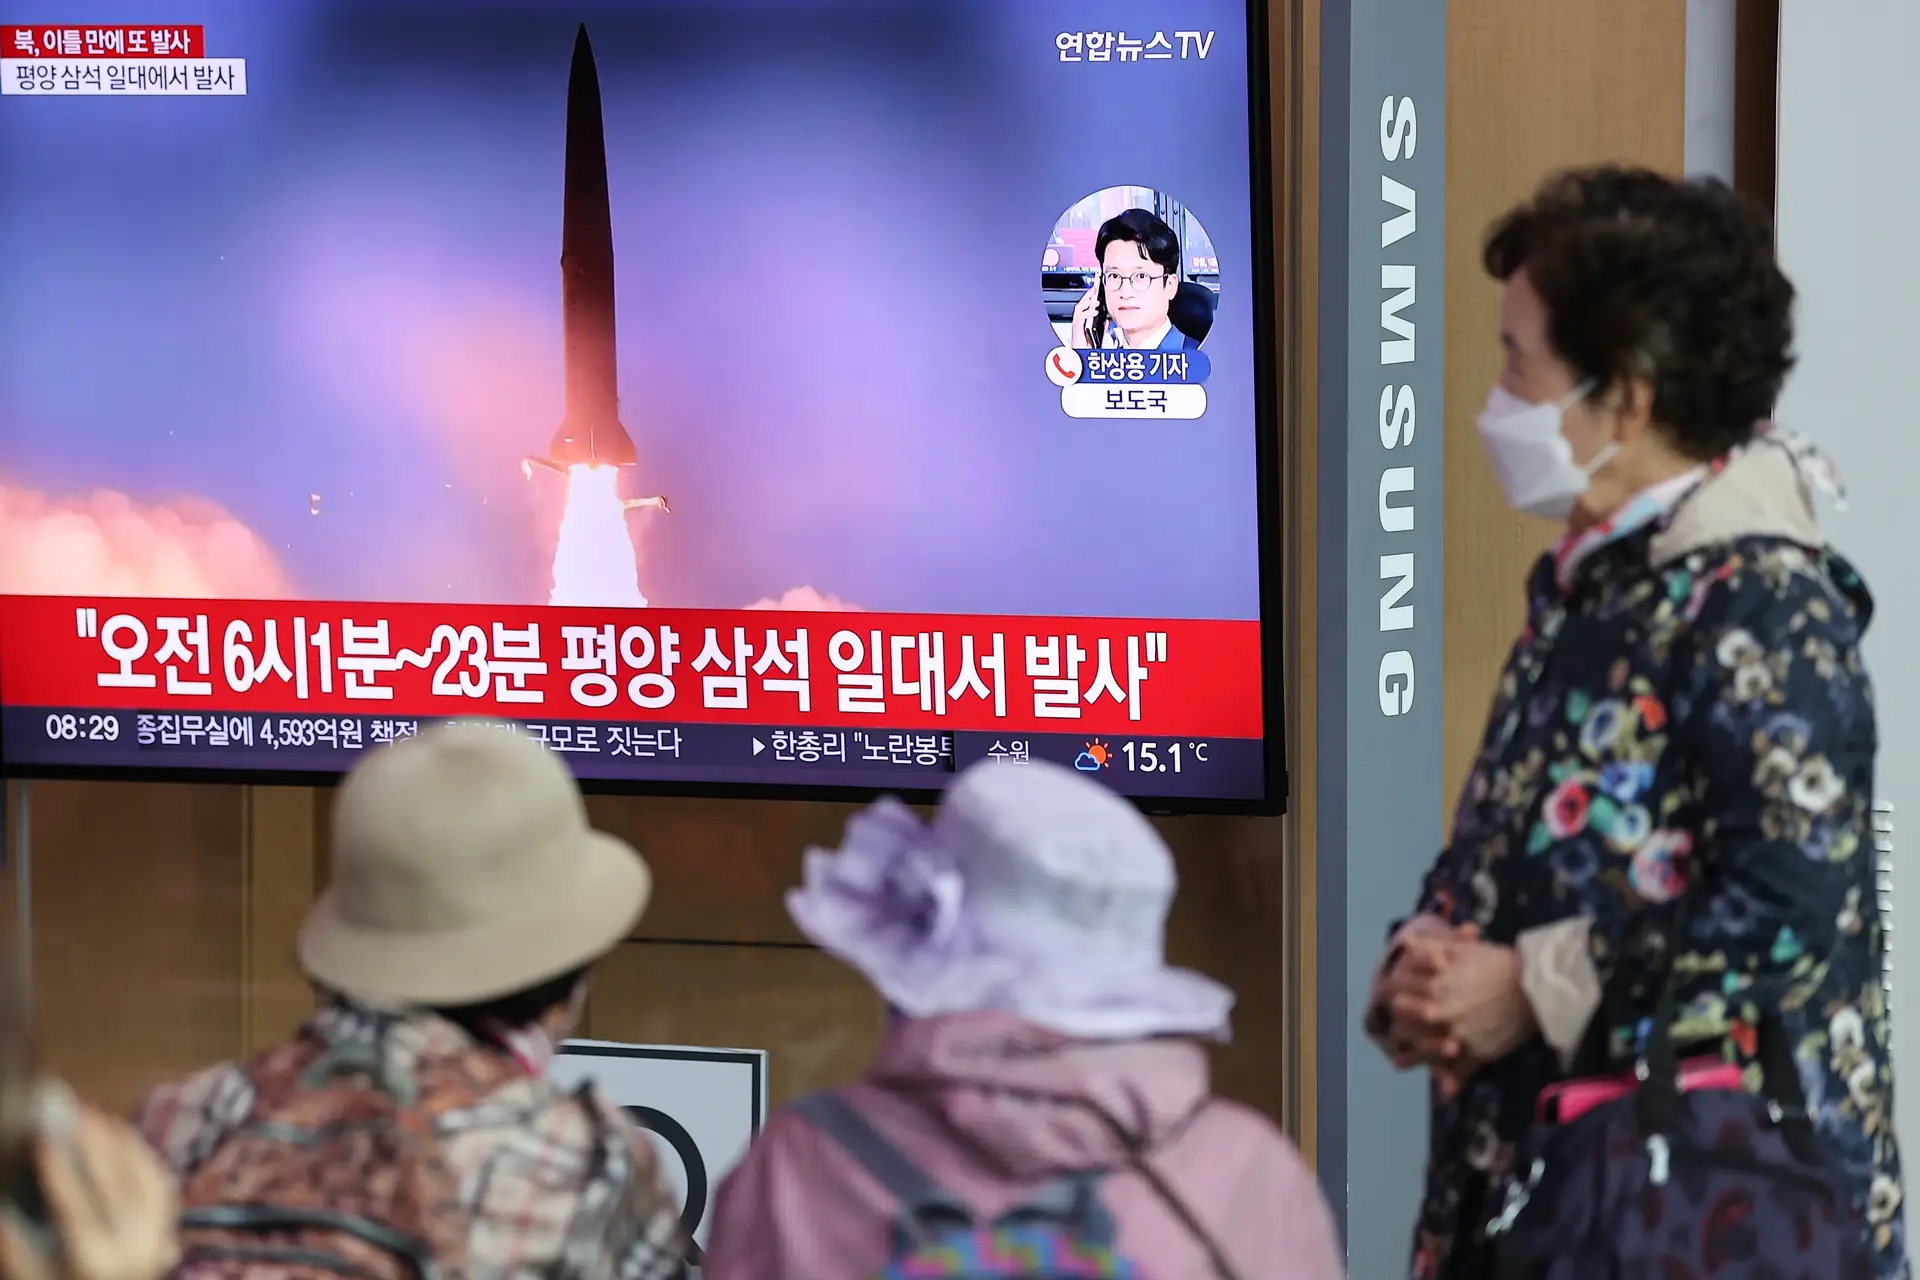 Doze aviões militares de Pyongyang sobrevoaram a fronteira entre as Coreias